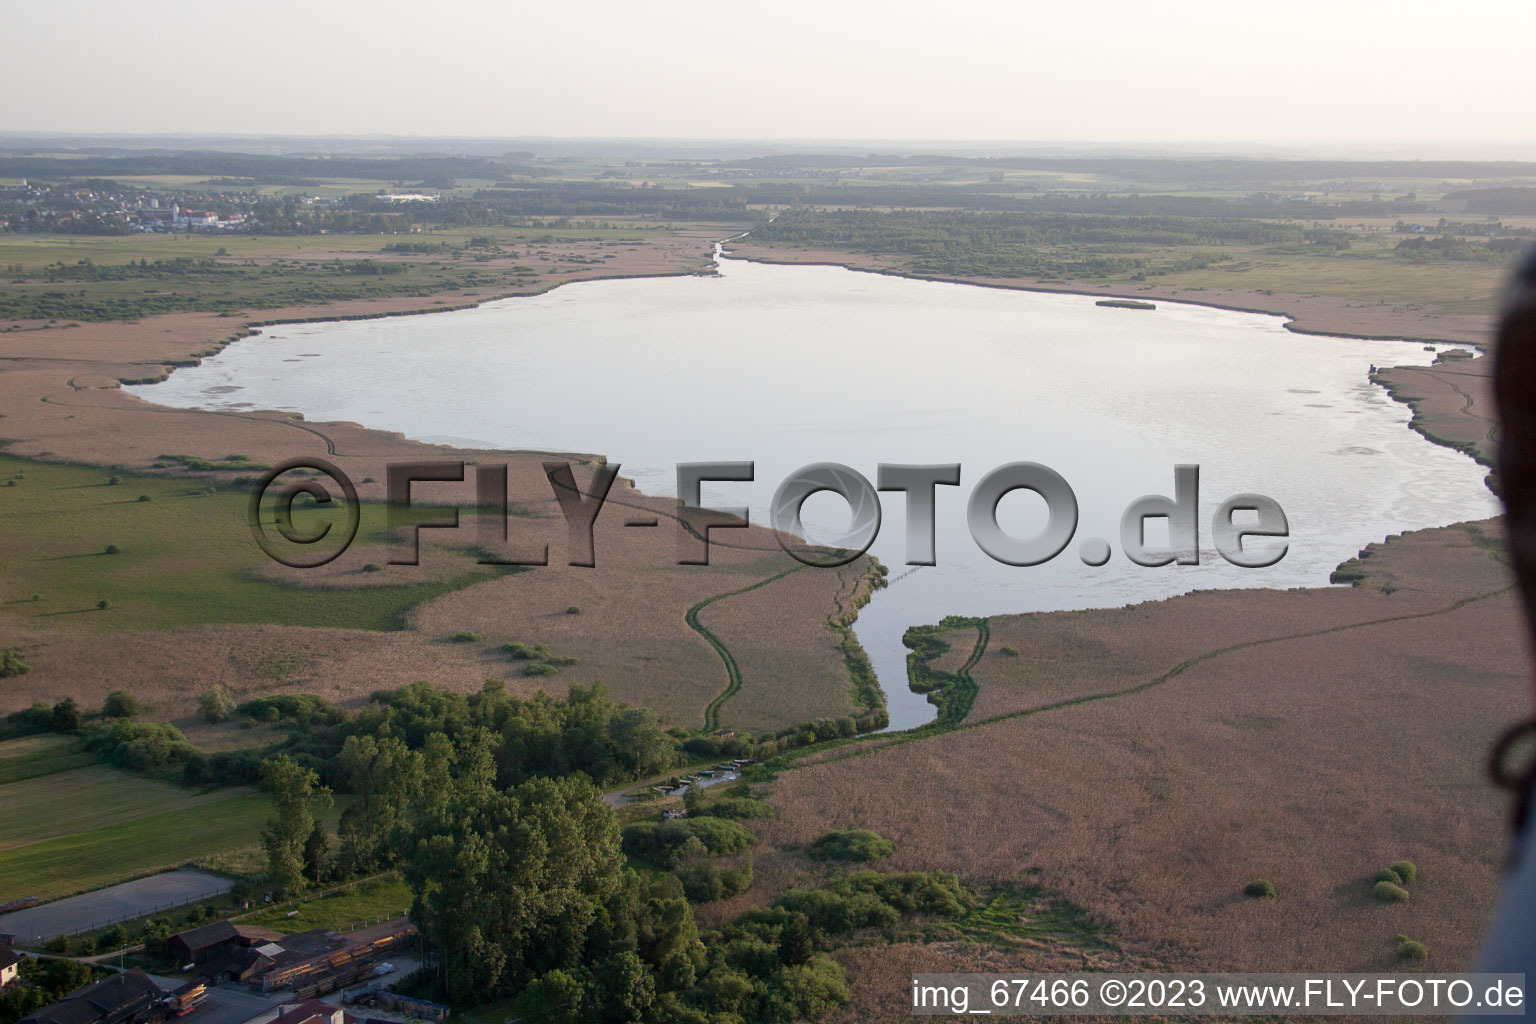 Photographie aérienne de Federsee avec des habitations sur pilotis à Tiefenbach dans le département Bade-Wurtemberg, Allemagne